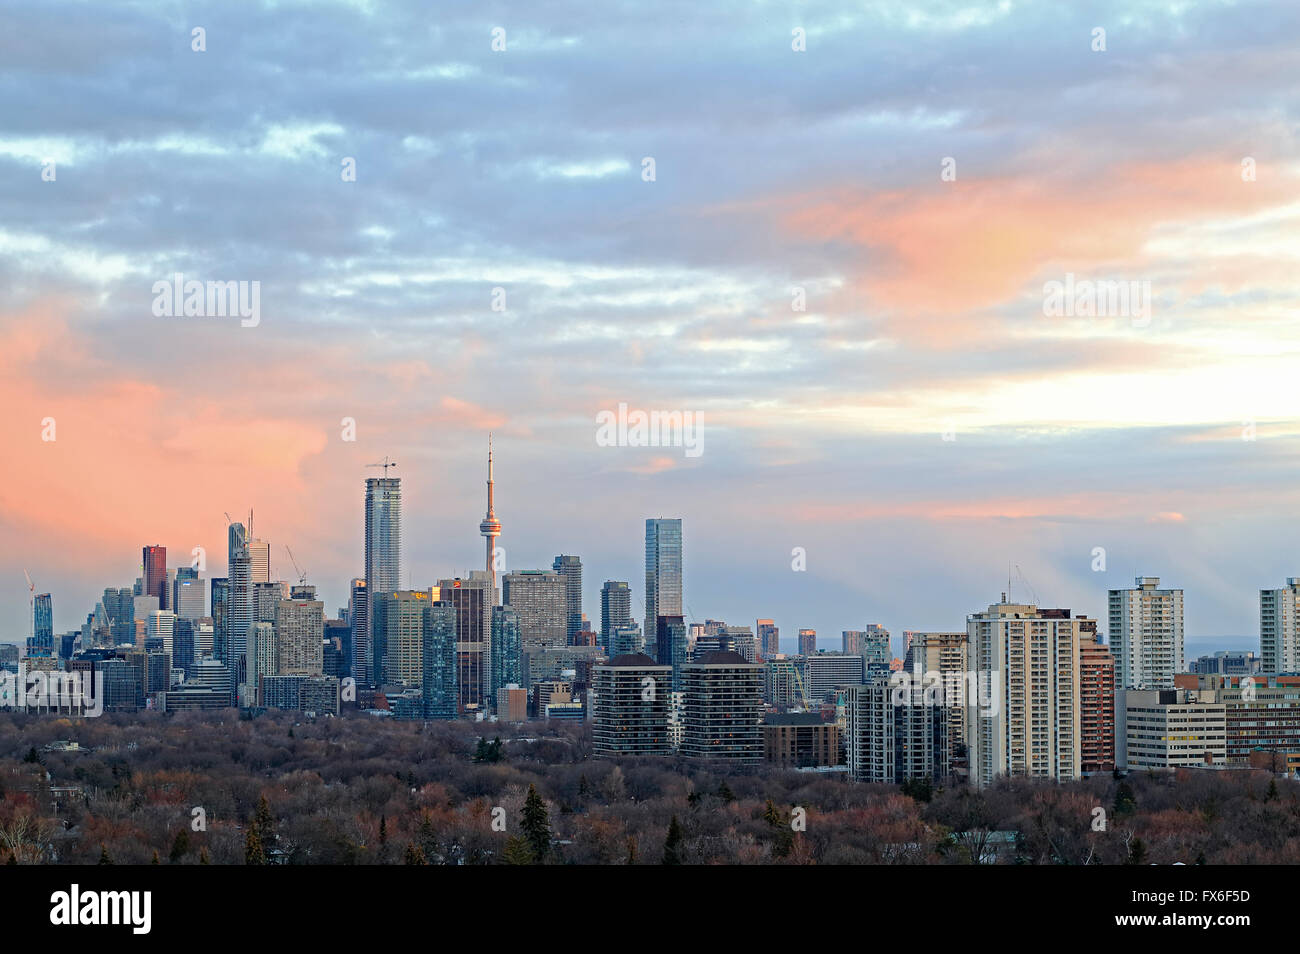 Toronto Skyline der Stadt mit bedeutenden Sehenswürdigkeiten der Stadt Gebäuden einschließlich der CN Tower, corporate und Bankgebäude in Downtown und Midtown, Witz Stockfoto